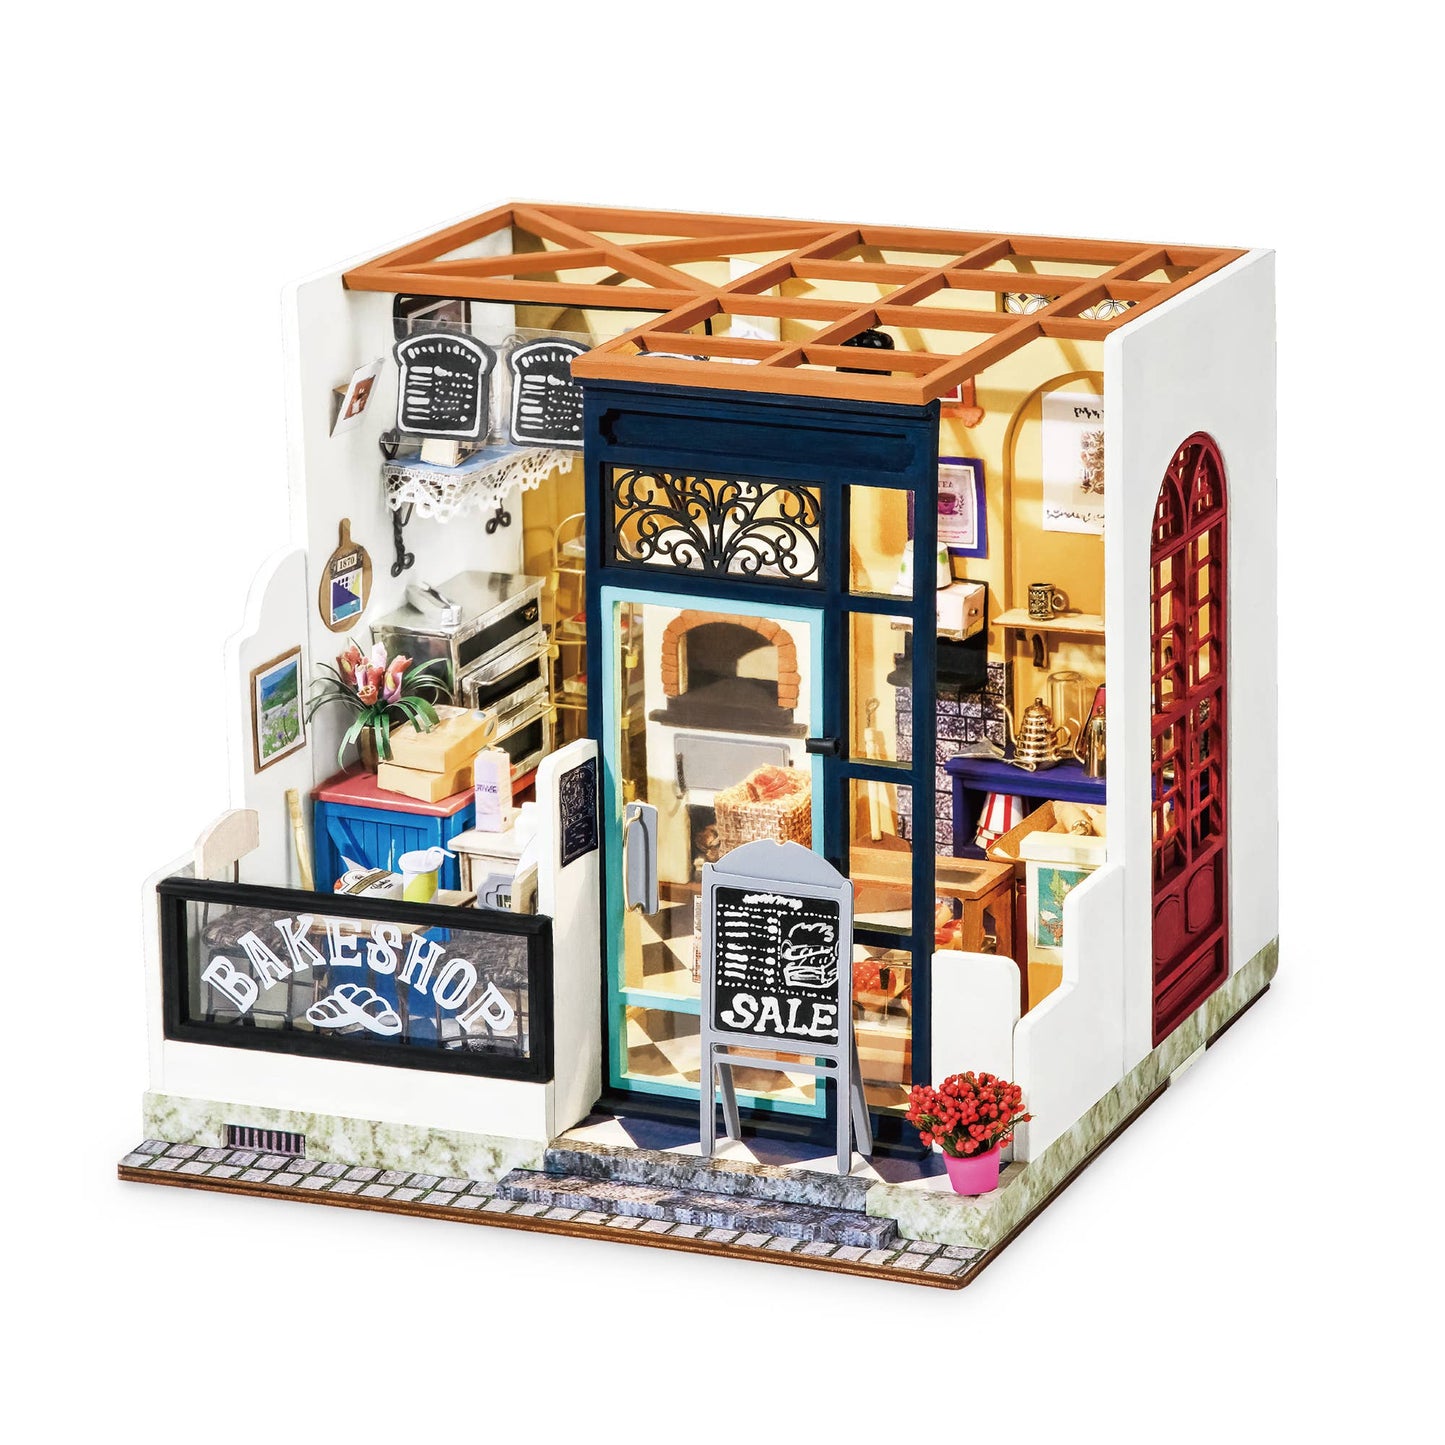 Bake Shop DIY Miniature Dollhouse Kit